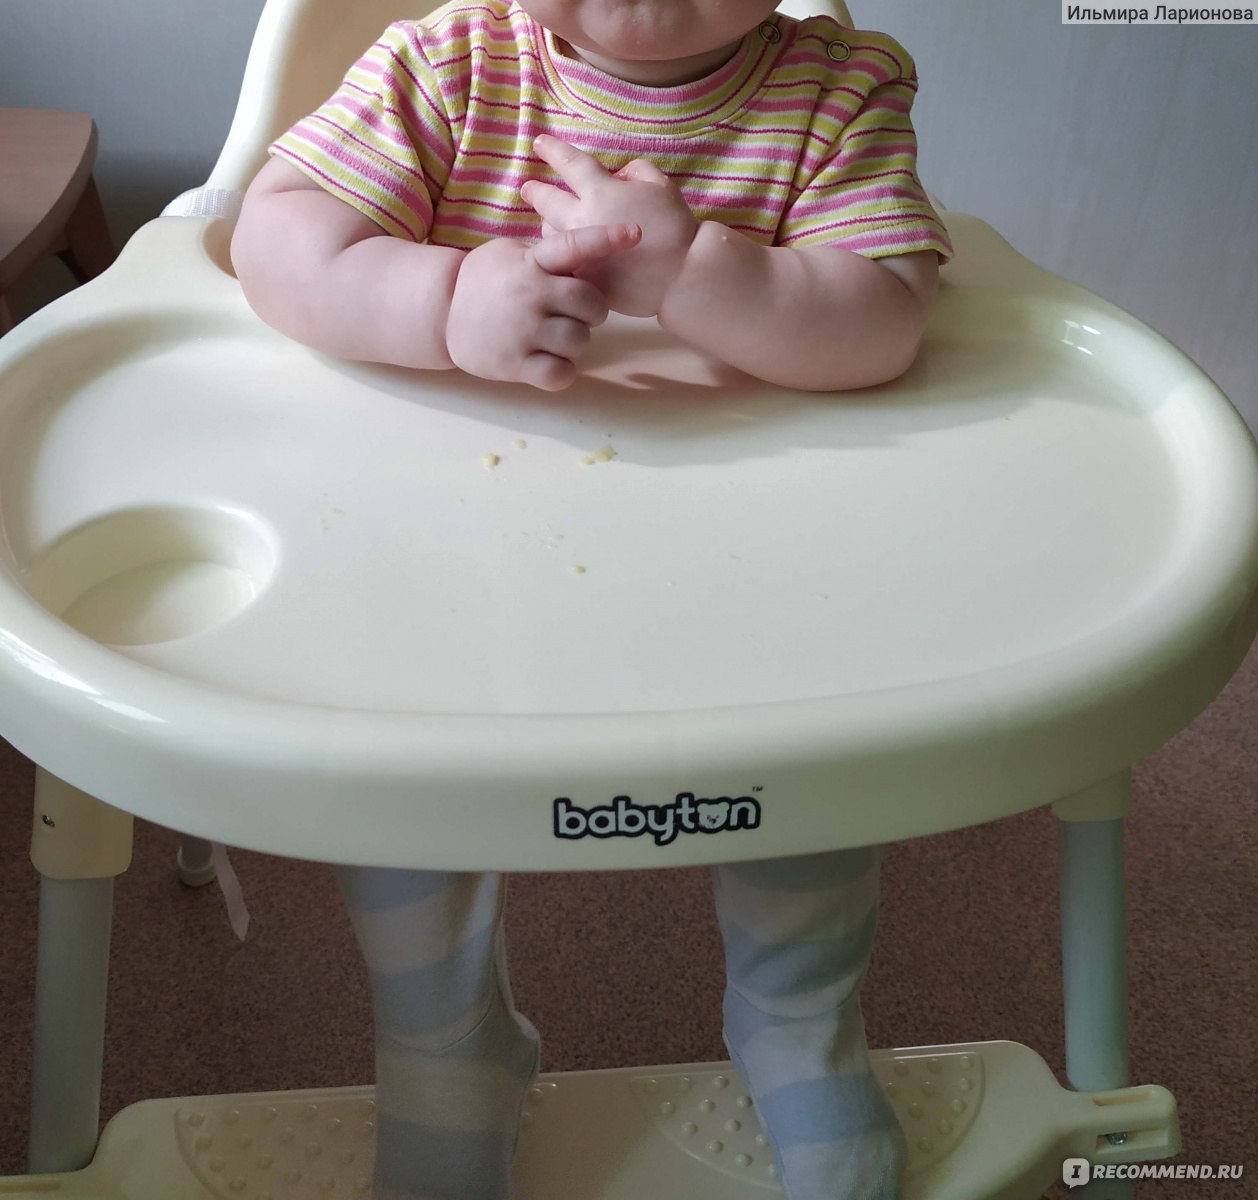 детский стульчик для кормления babyton инструкция